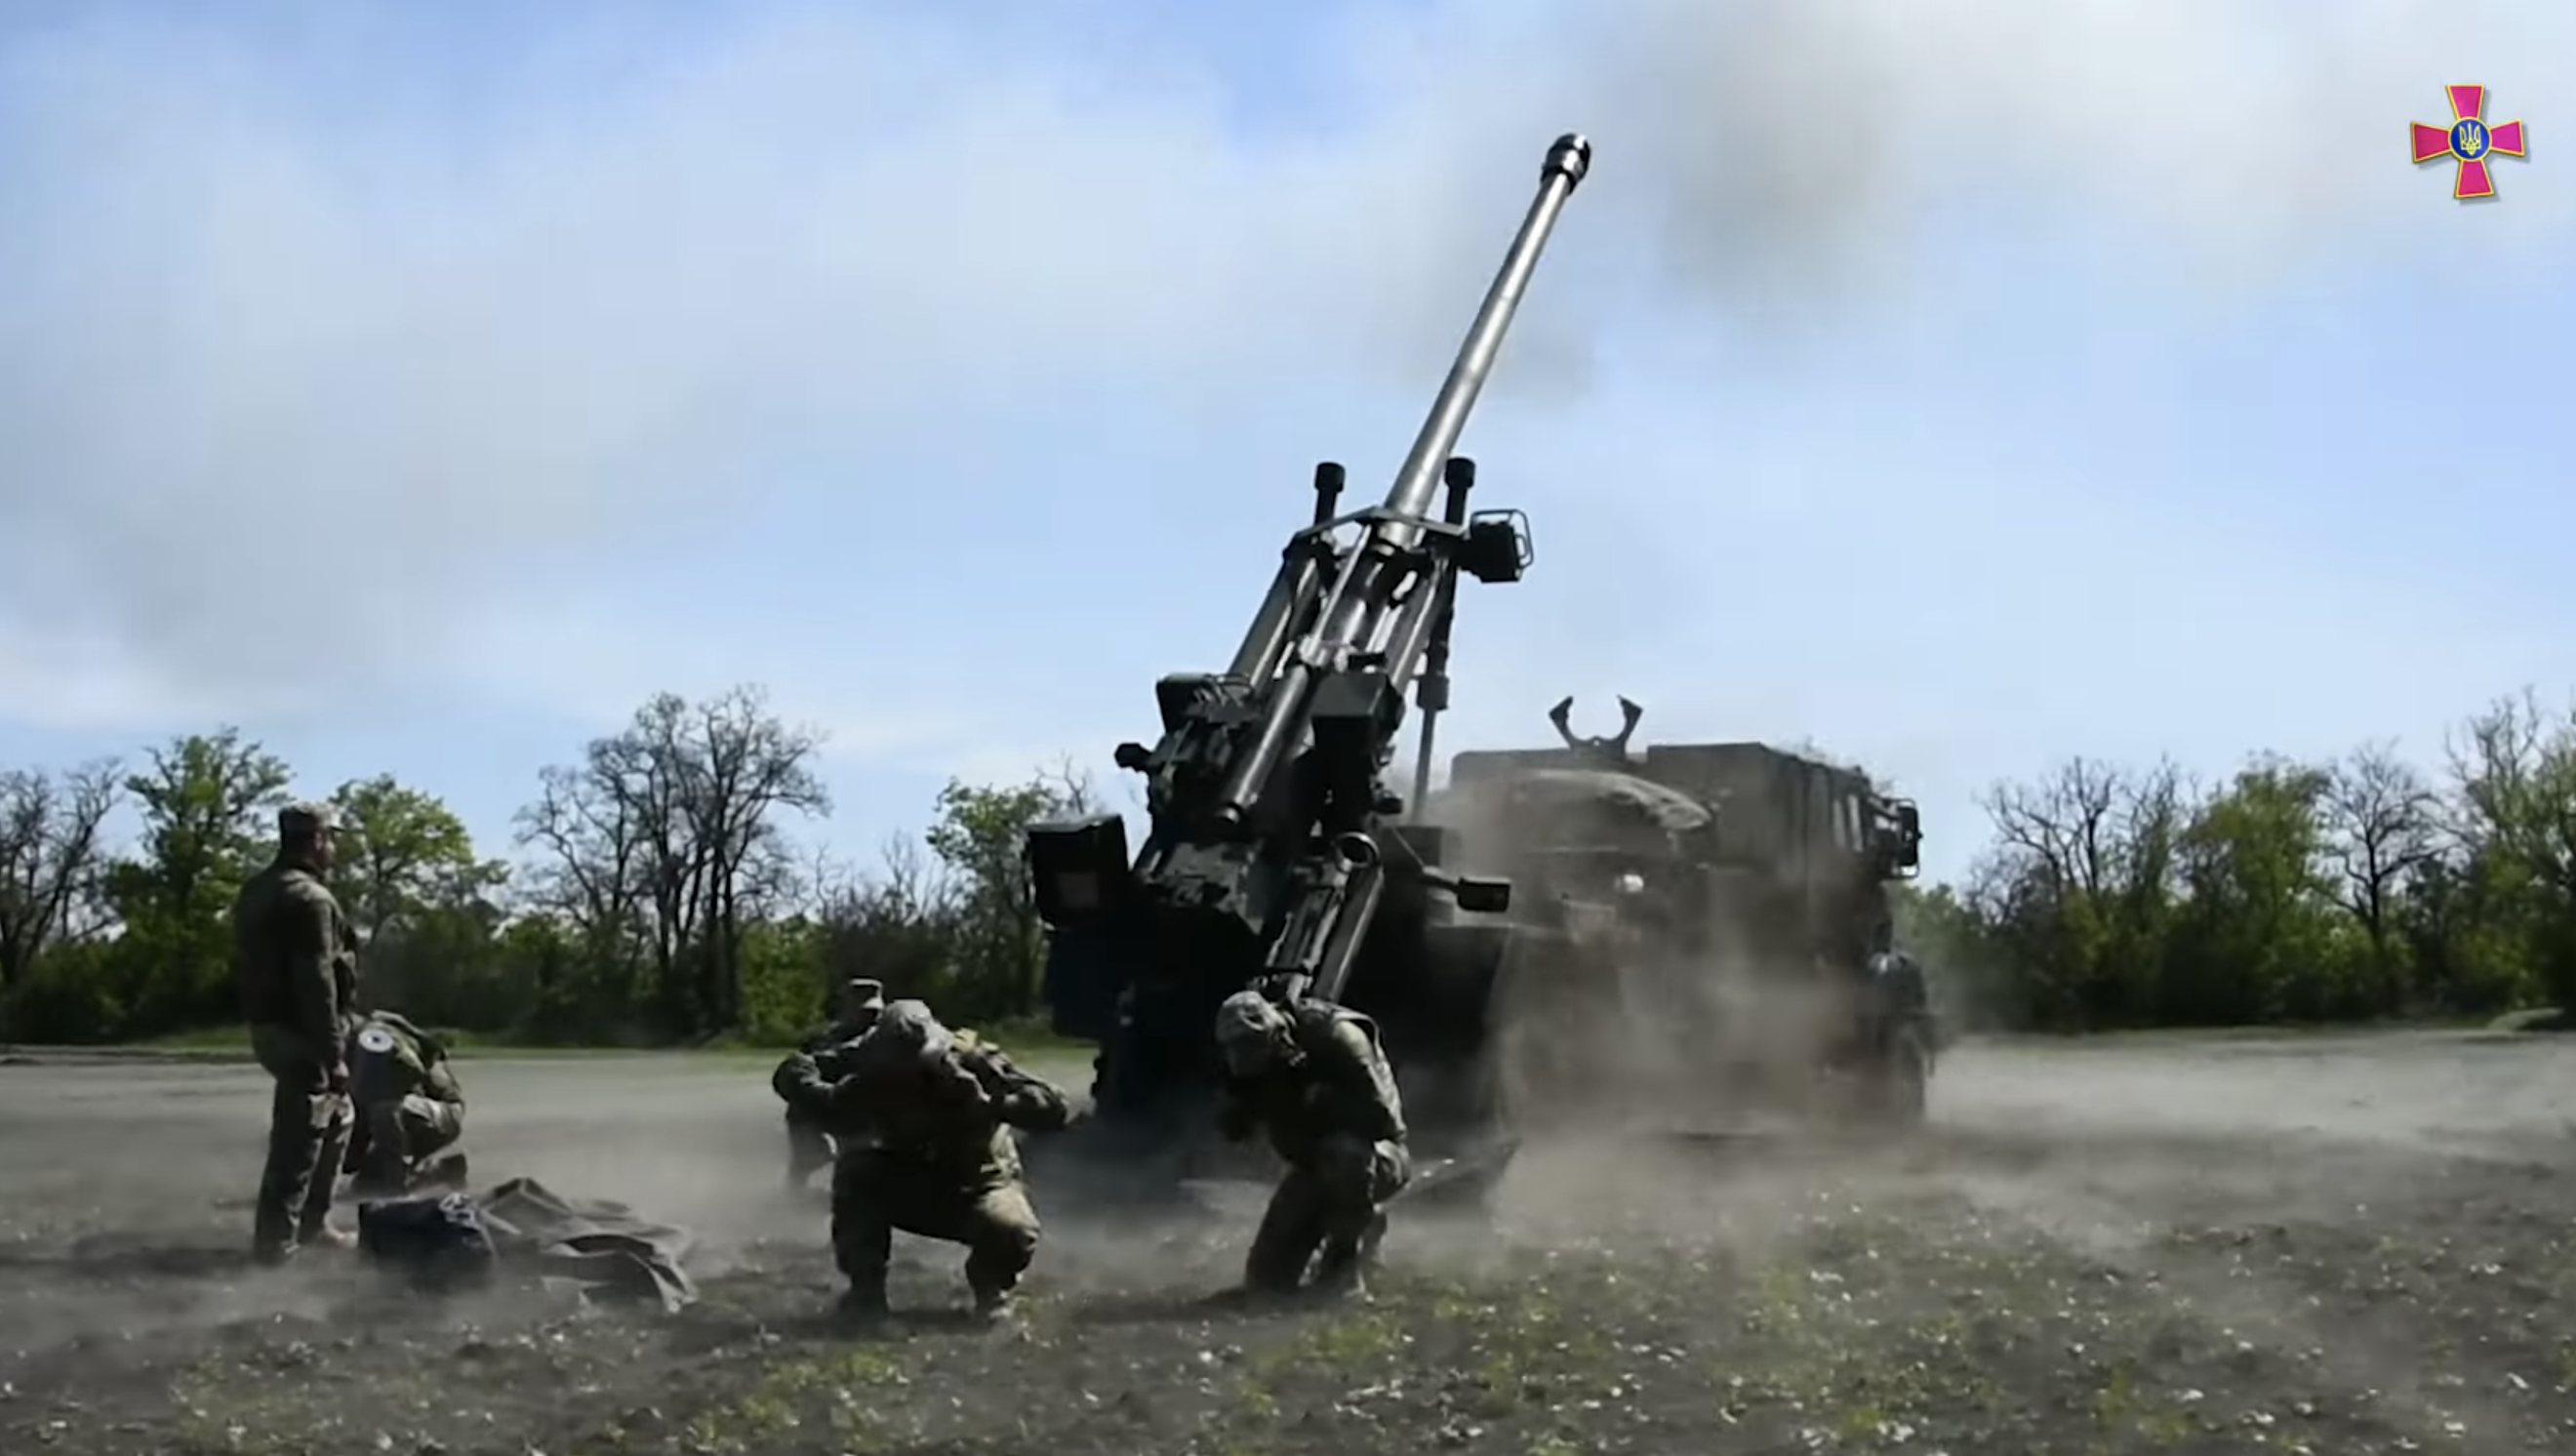 乌克兰总参谋部在YouTube频道25日发布的乌军操作法制“凯撒”155毫米自行火炮视频截图